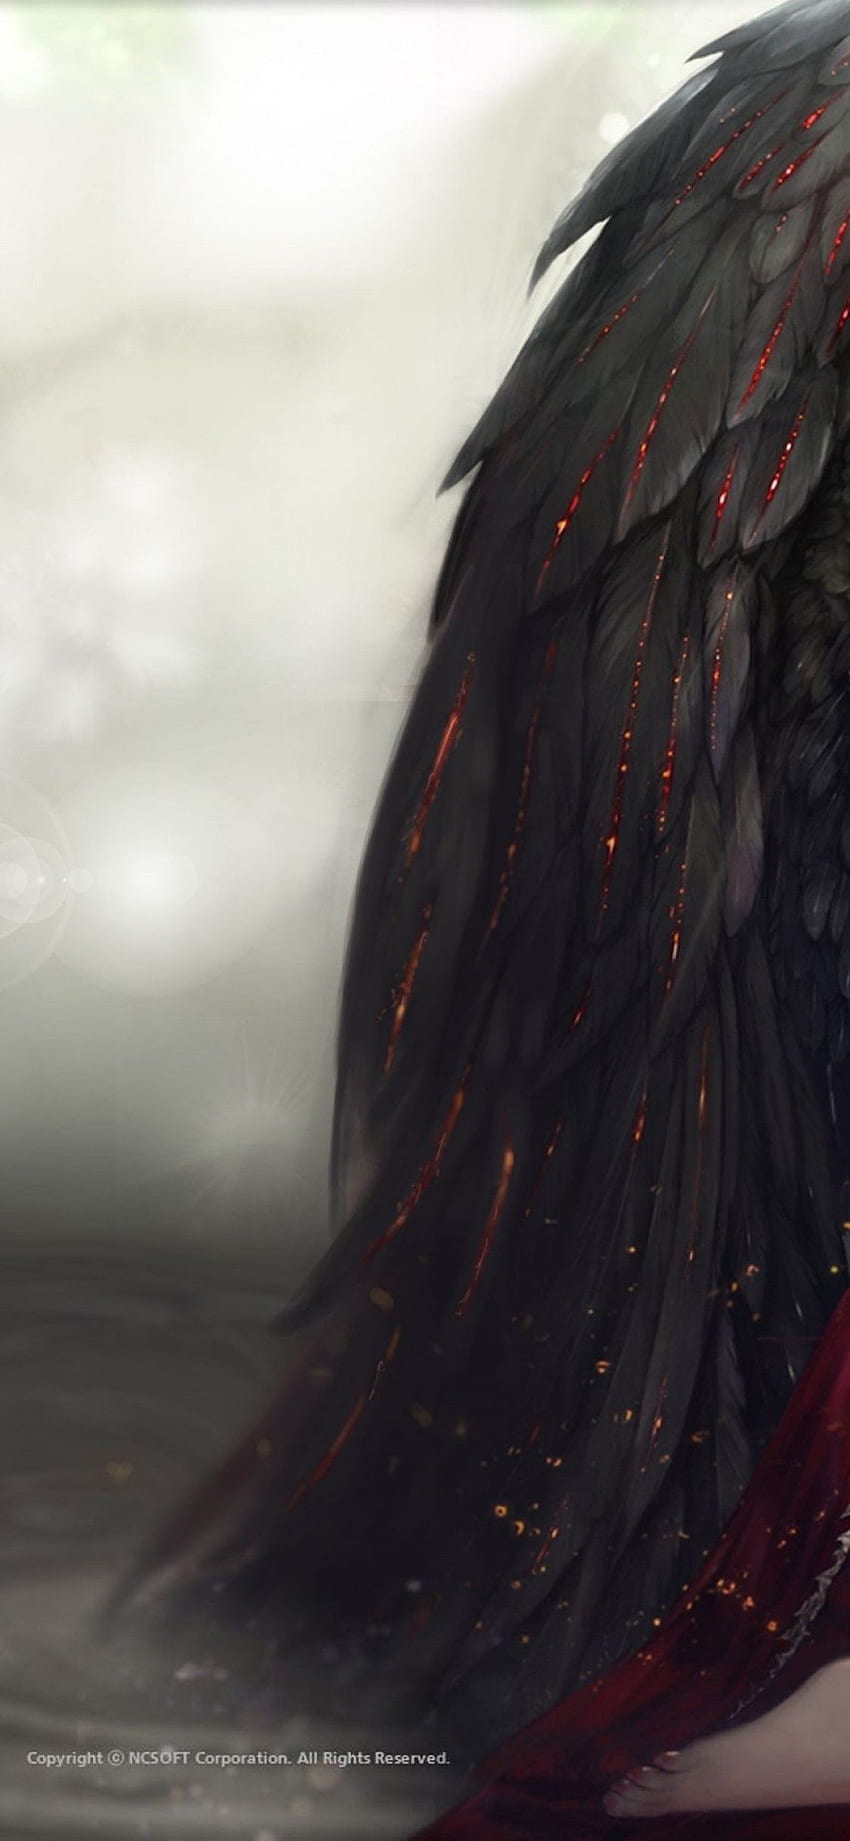 Aion Online, Fallen Angel, Dark Wings, Red Dress, Red Eyes für iPhone 11 Pro & X HD-Handy-Hintergrundbild